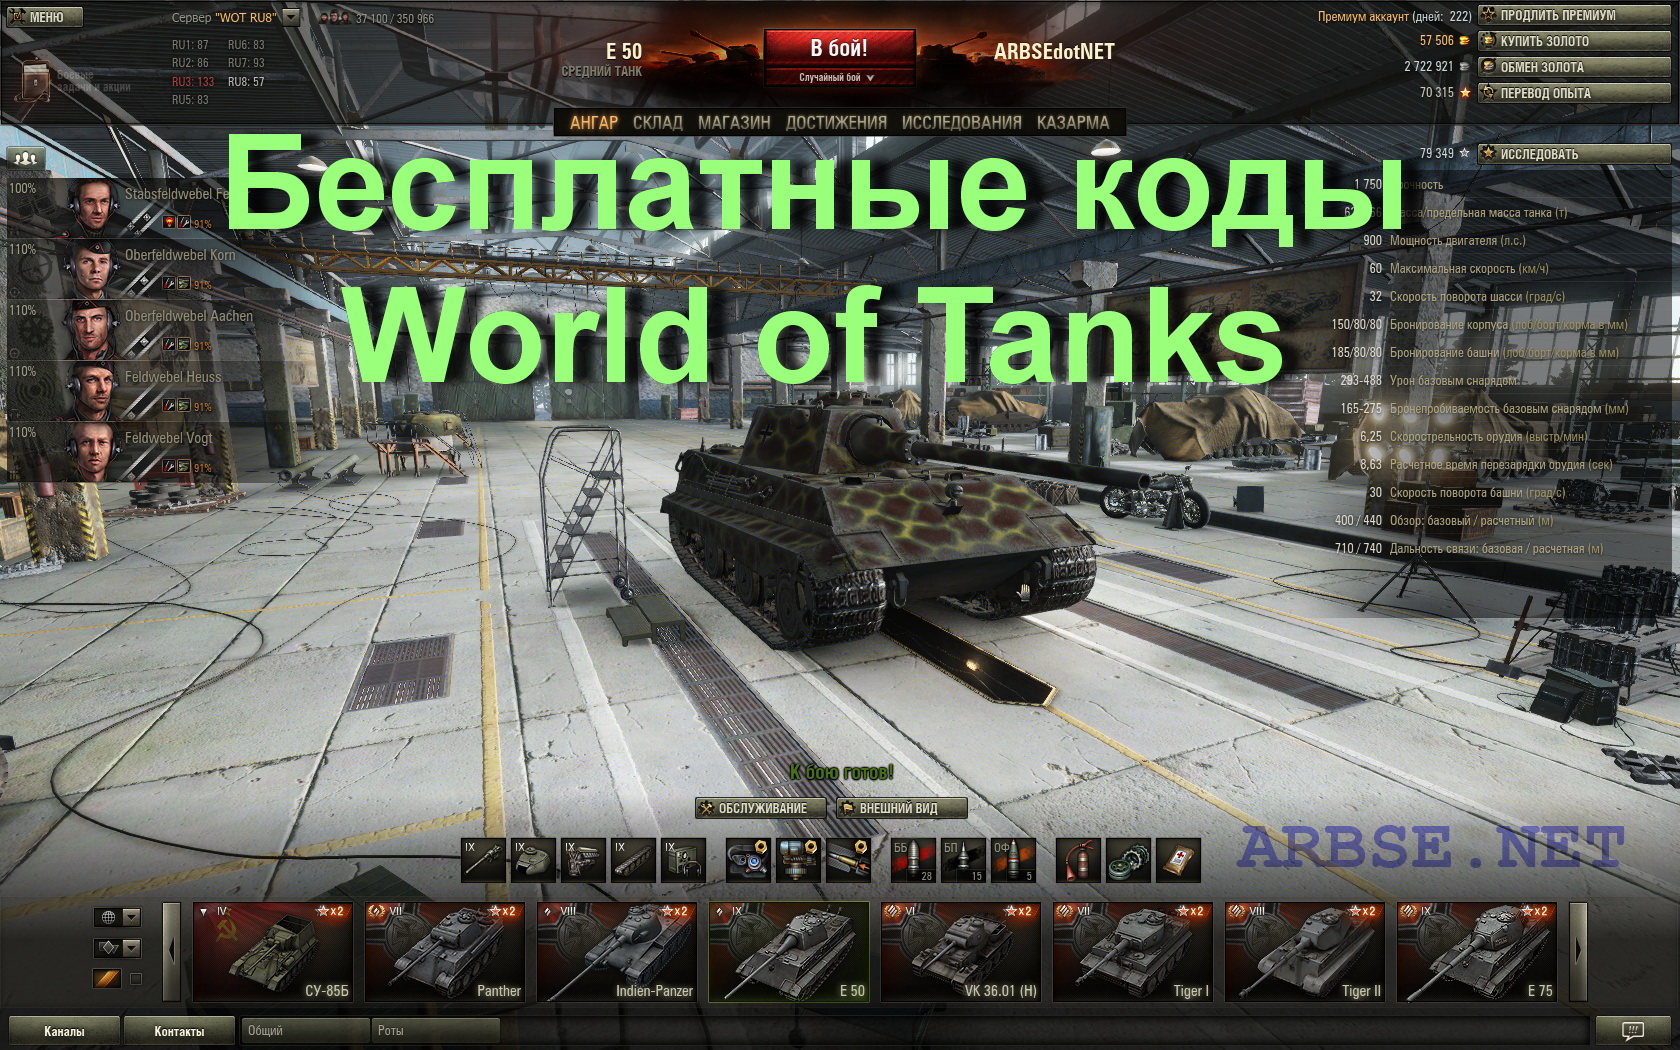 Золото и премиум-аккаунт в World of Tanks RS9EW5-A7AVGX на новый акк если у...